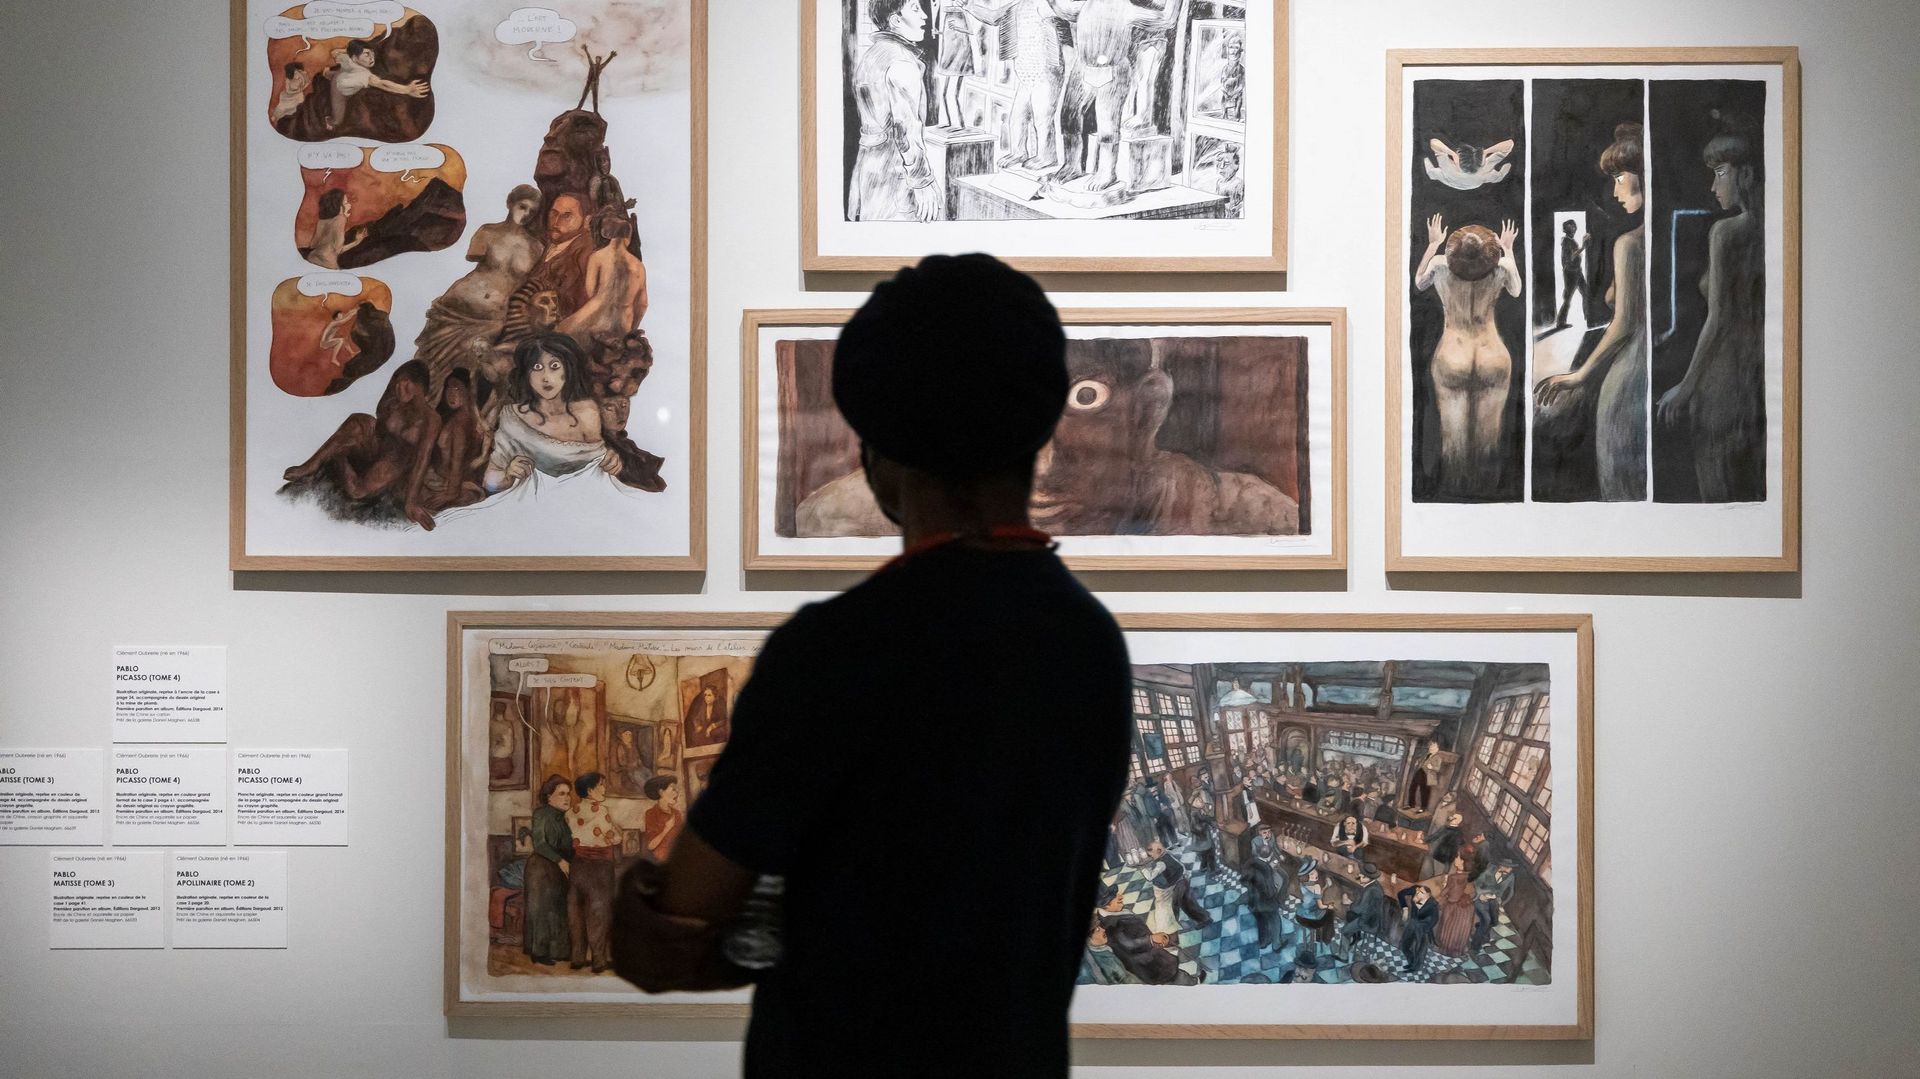 L’exposition "Picasso et la bande dessinée" est visible à la Cité Internationale de la bande dessinée et de l’image à Angoulême jusqu’en janvier 2022.